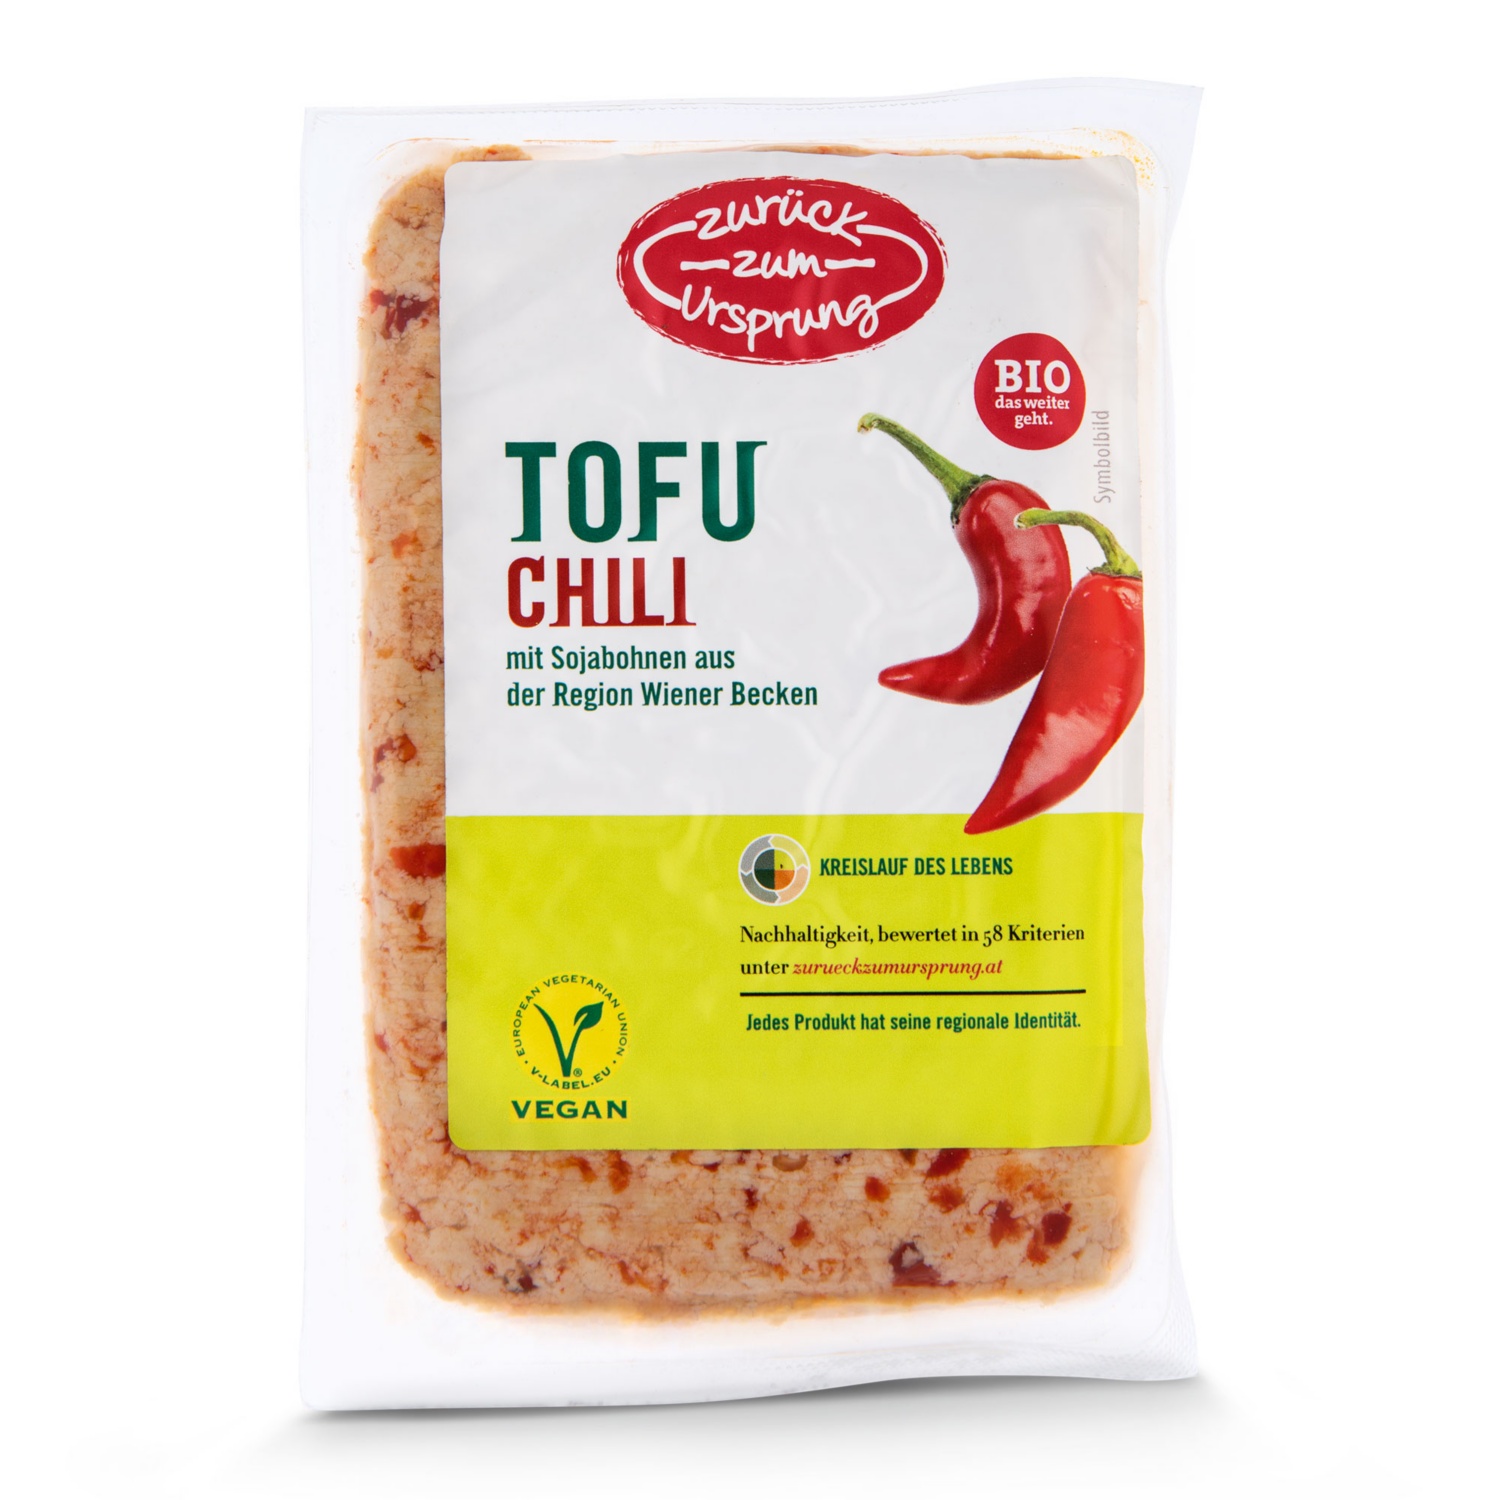 ZURÜCK ZUM URSPRUNG Tofu, Chili